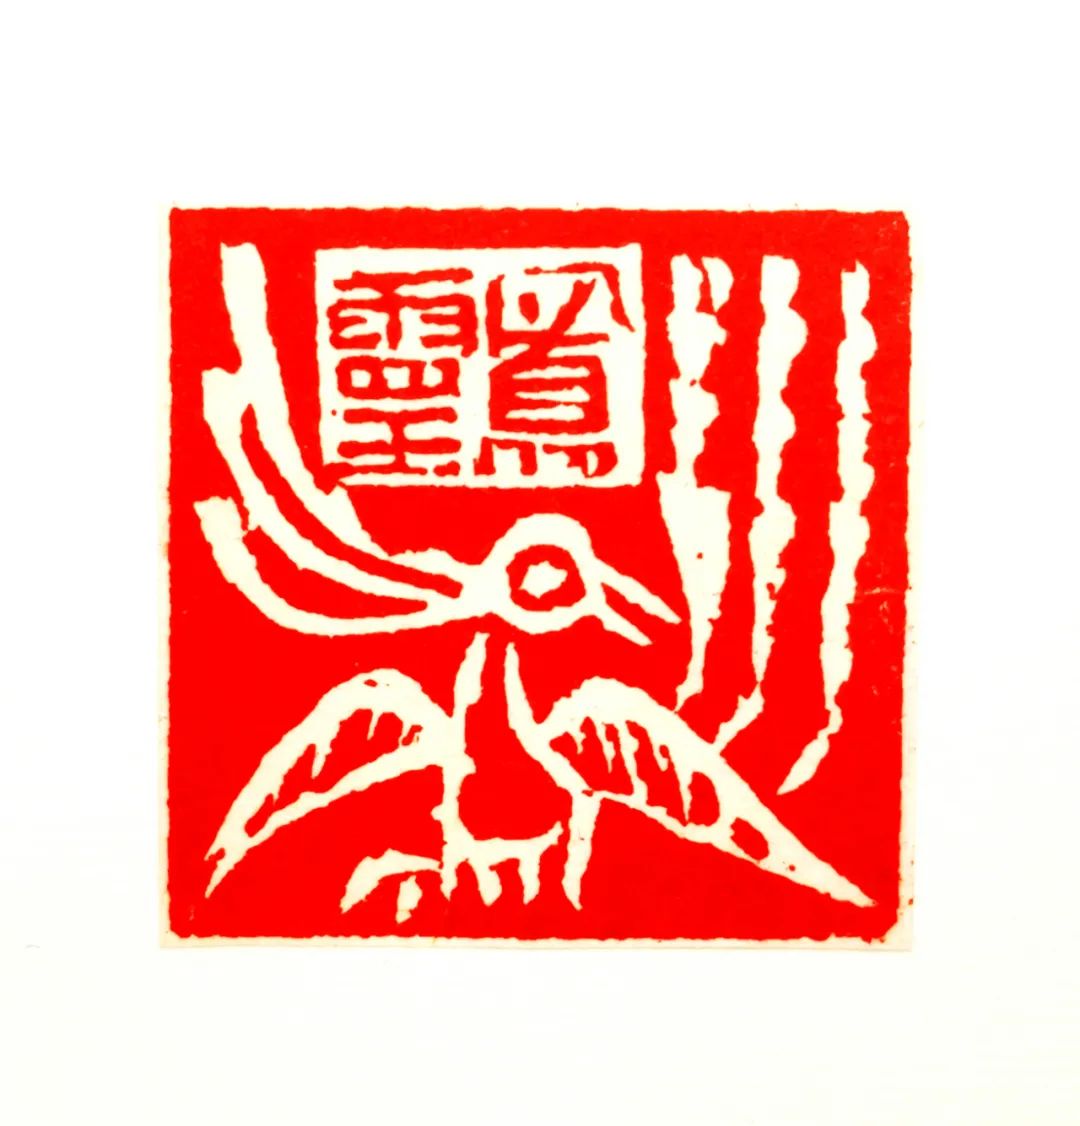 鱼鸟相呼、伴读光阴，著名艺术家王奇嵩临摹108方两汉鸟虫印有感